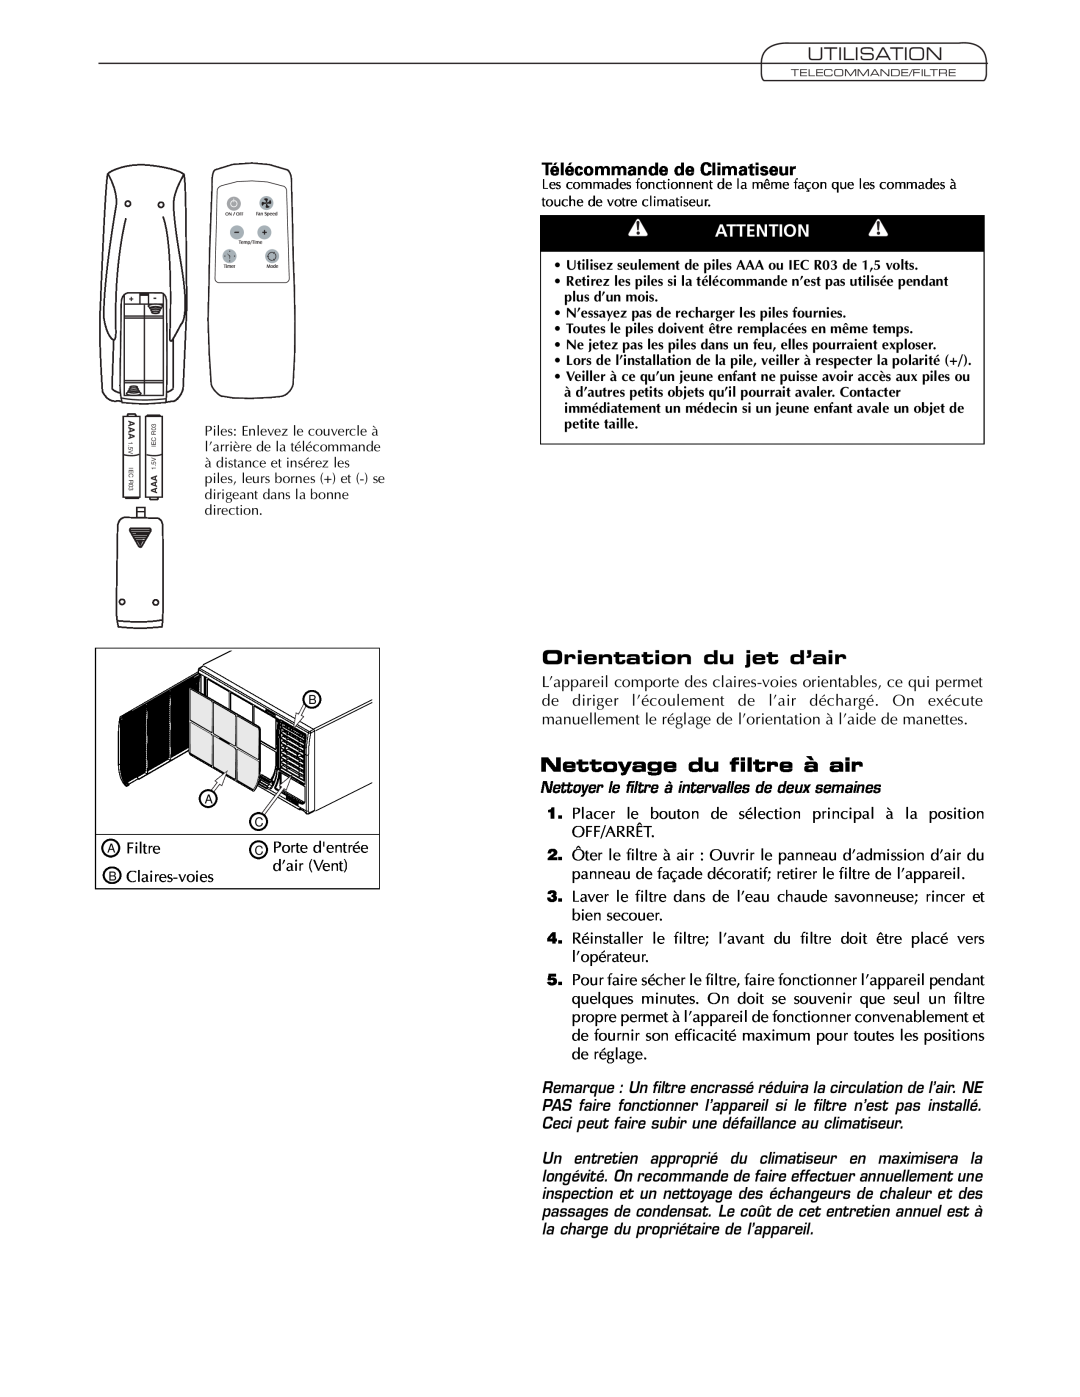 Fedders AEY08F2B Orientation du jet d’air, Nettoyage du filtre à air, Utilisation, Télécommande de Climatiseur 